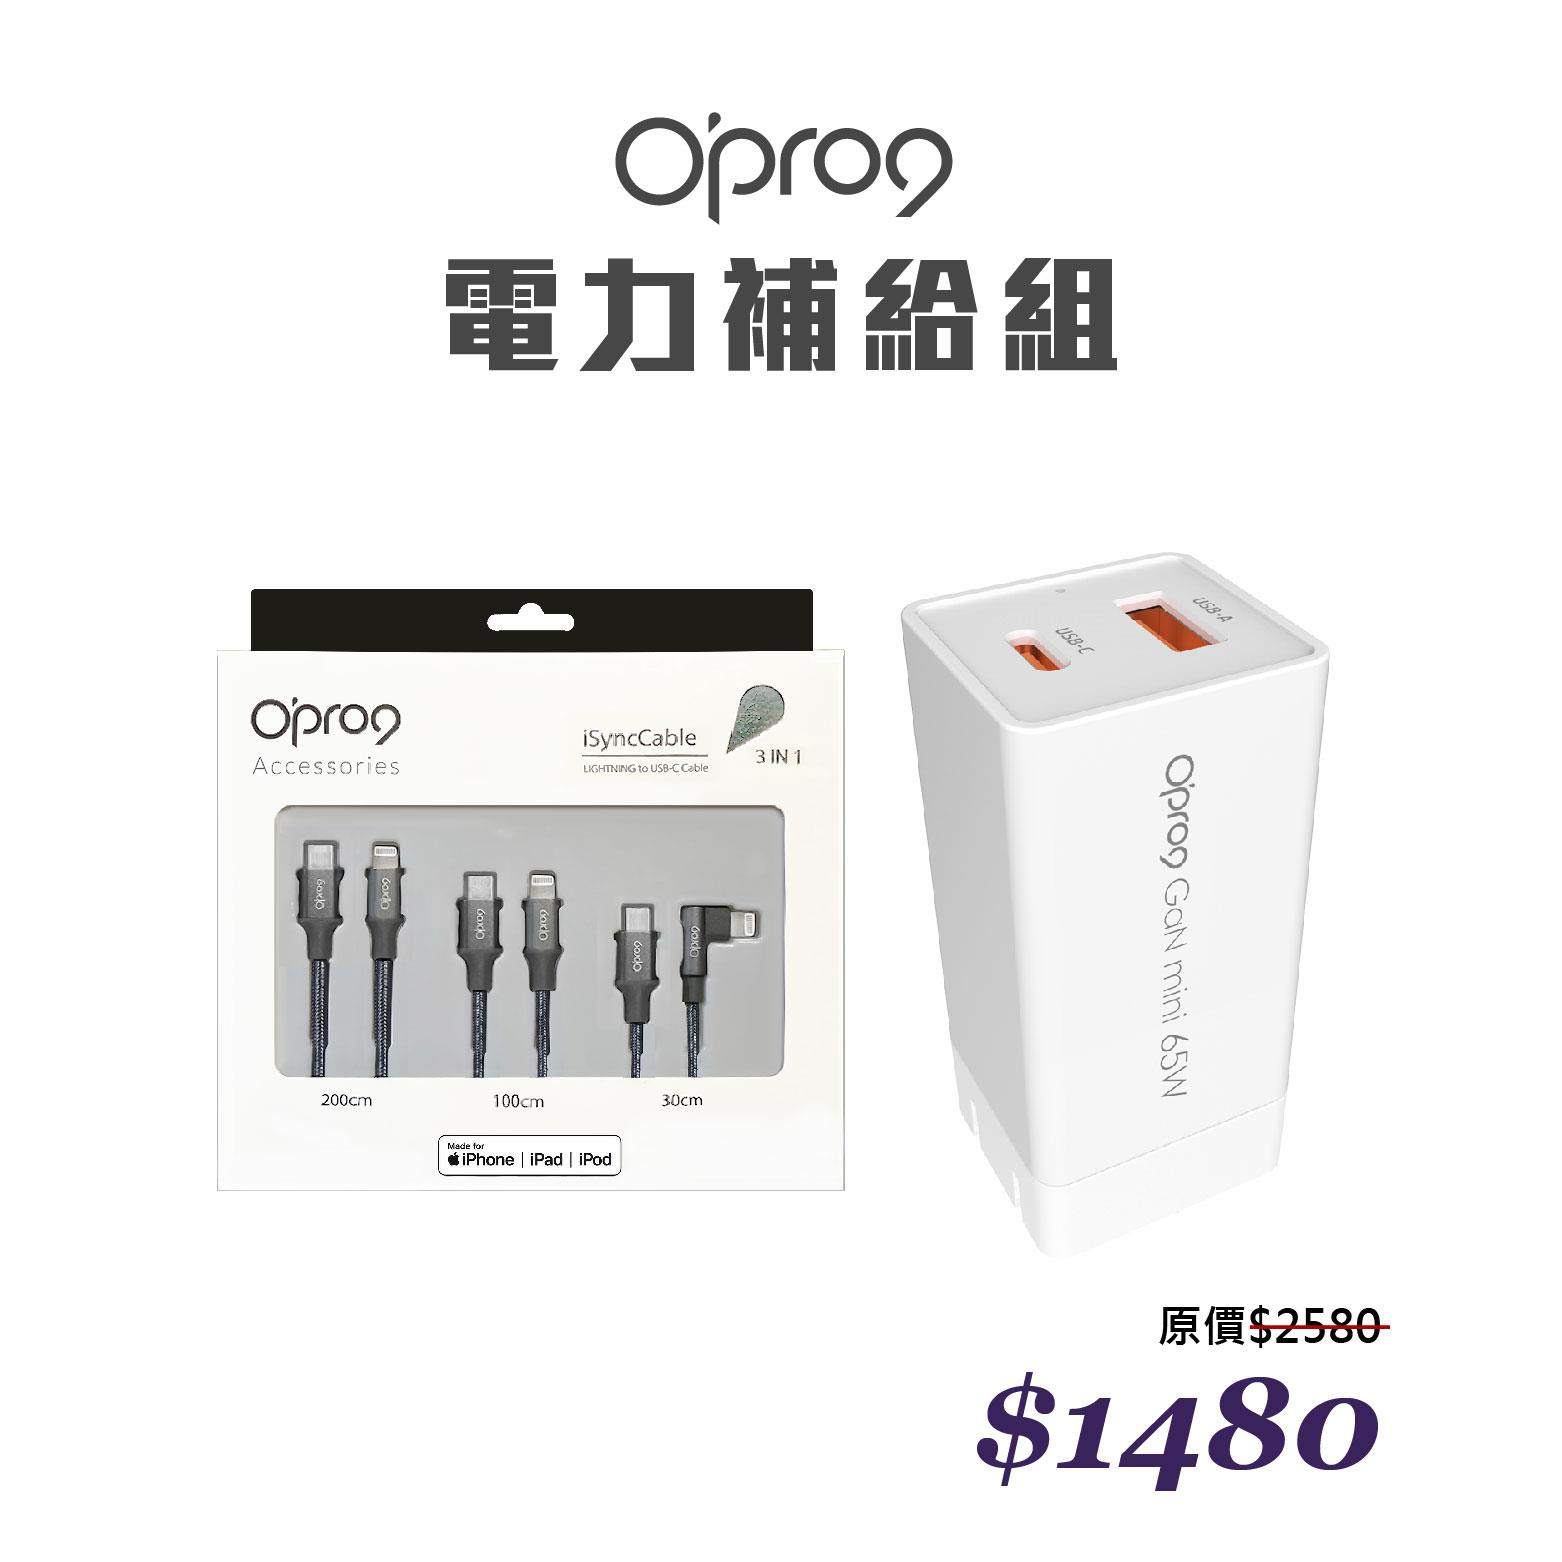 【電力補給組】Opro9 GaN 65W 氮化鎵快充電源供應器 + 蘋果TypeC to Lightning編織數據線組合包 (內含200cm+100cm+30cm各1入)